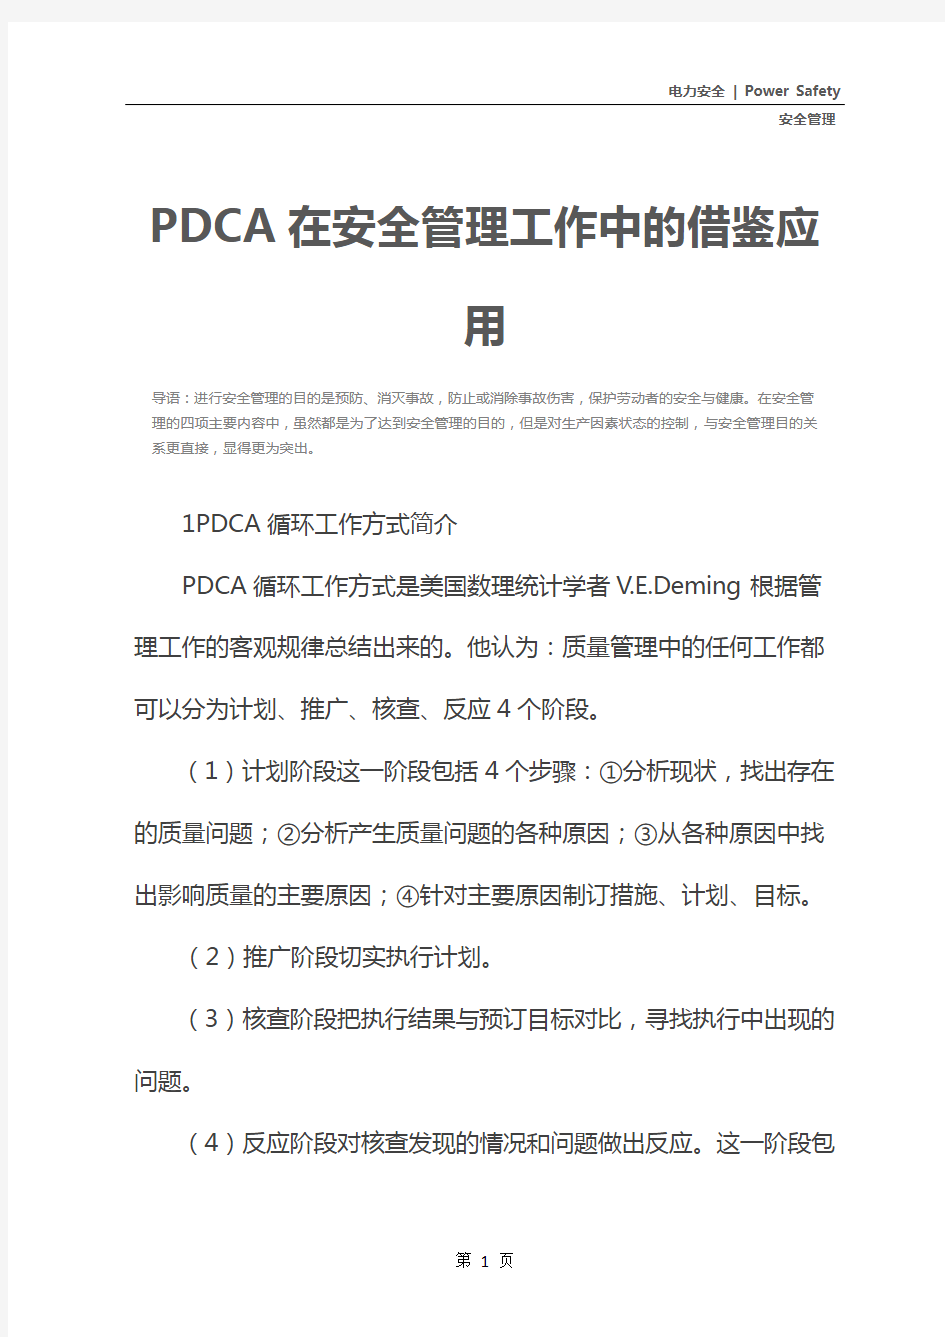 PDCA在安全管理工作中的借鉴应用